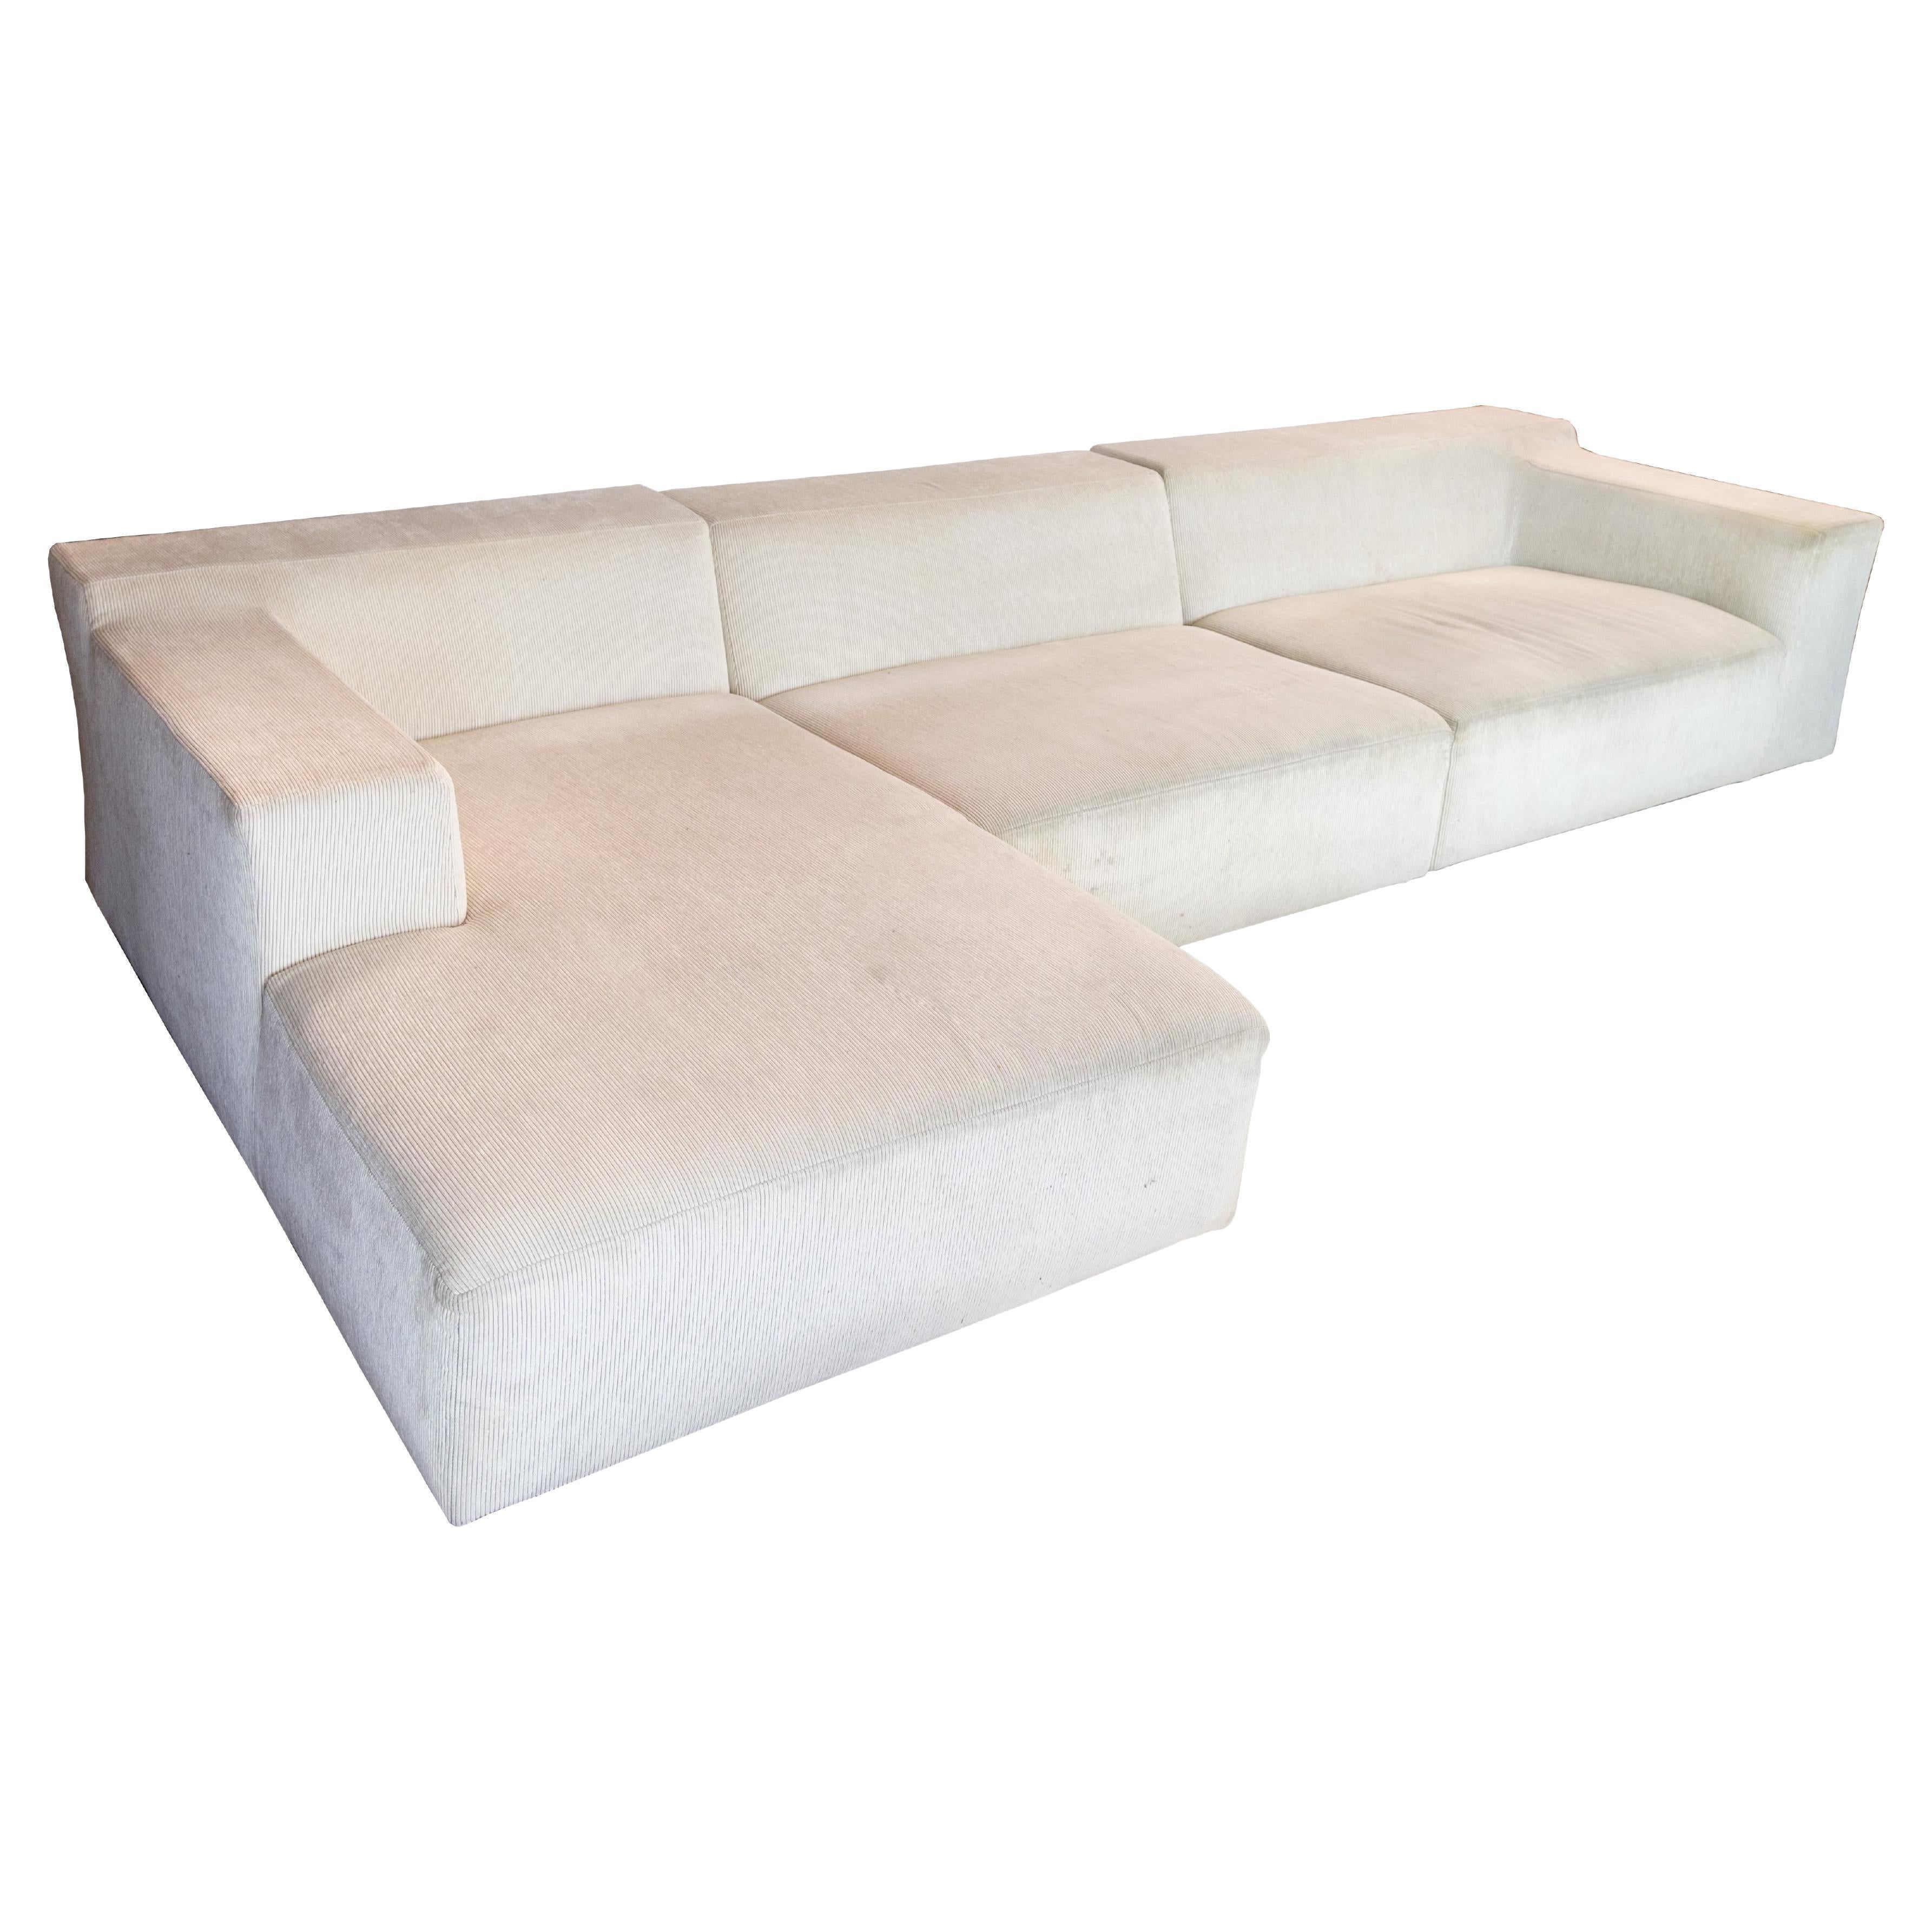 Scandinavian Modern Sofa, Model Baseline Designed by Jens Juul Eilersen